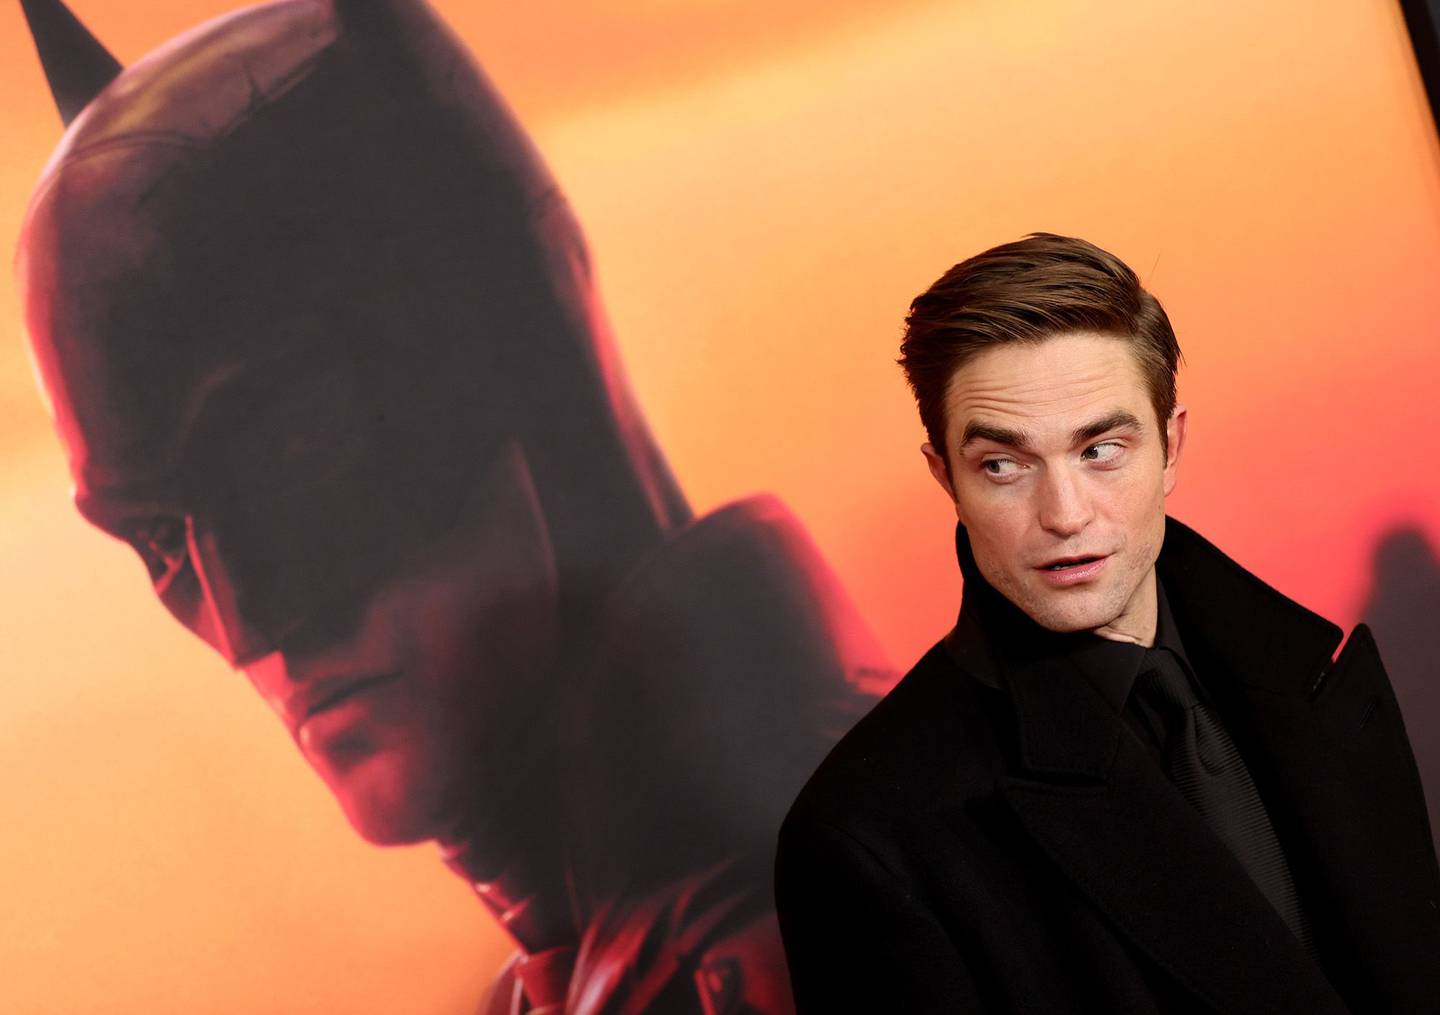 Robert Pattinson asiste al estreno mundial de "The Batman" en Nueva York.dfd